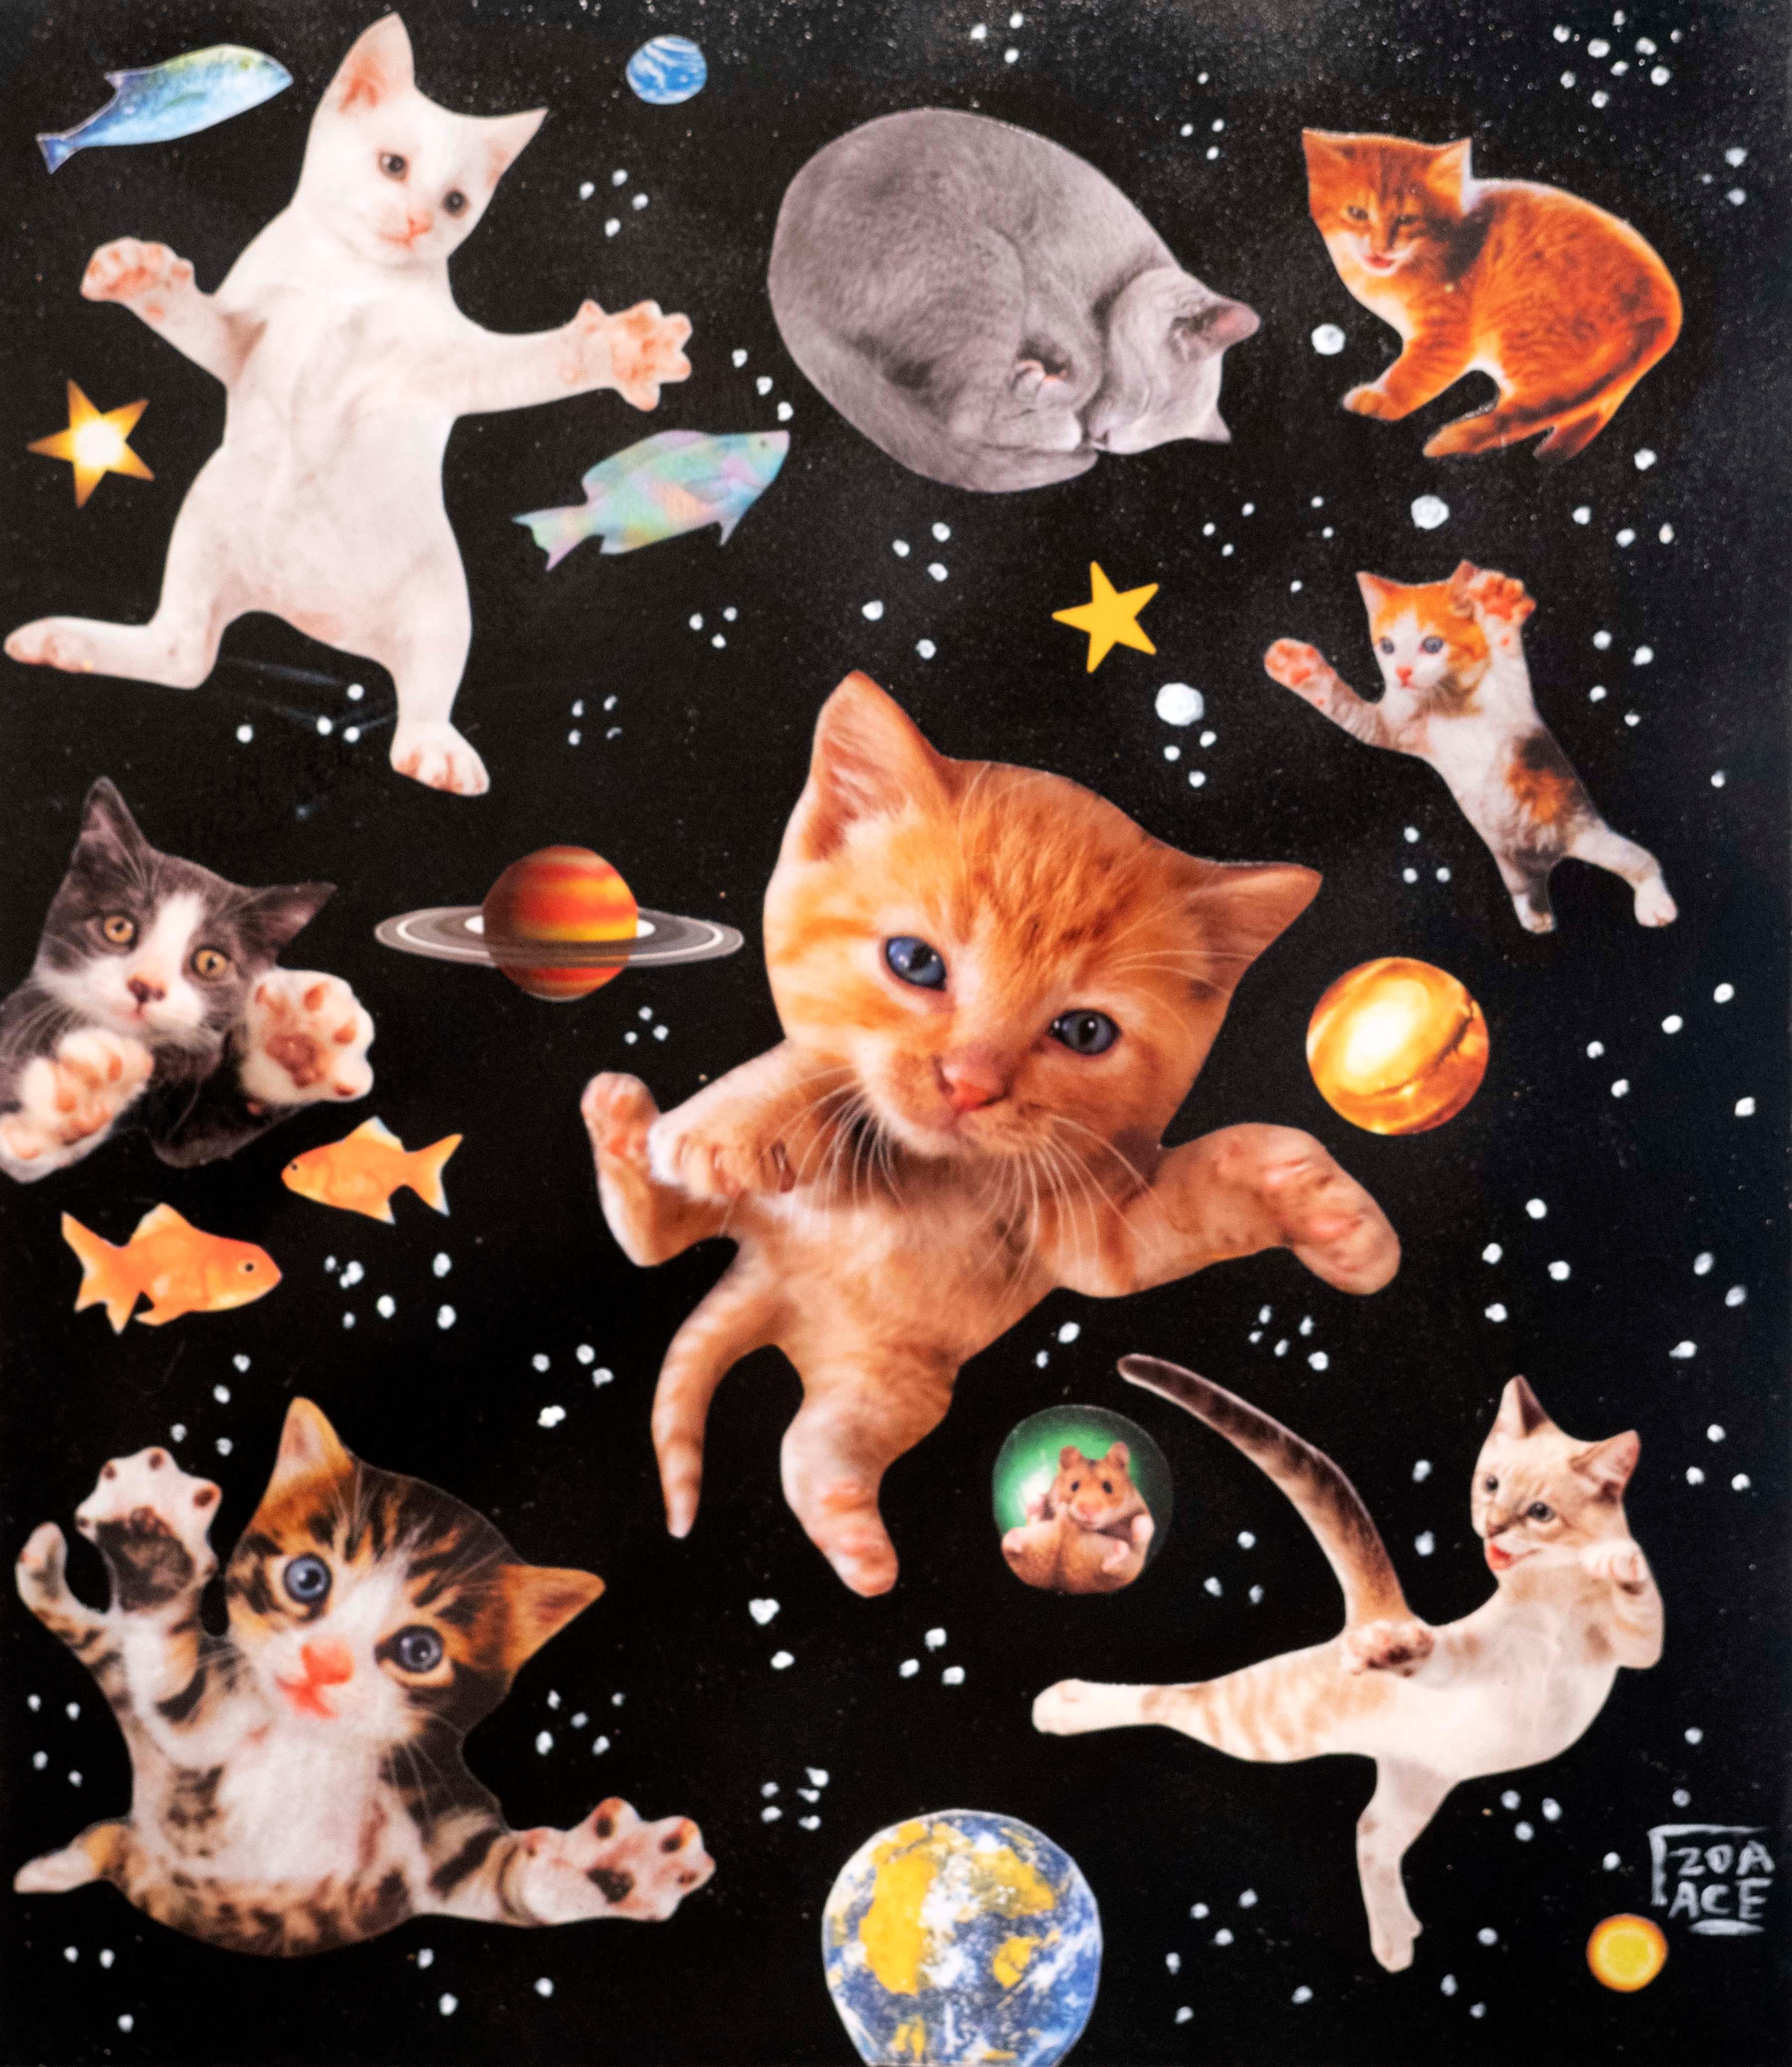 Zoa Ace Animal Painting - Stray Cats